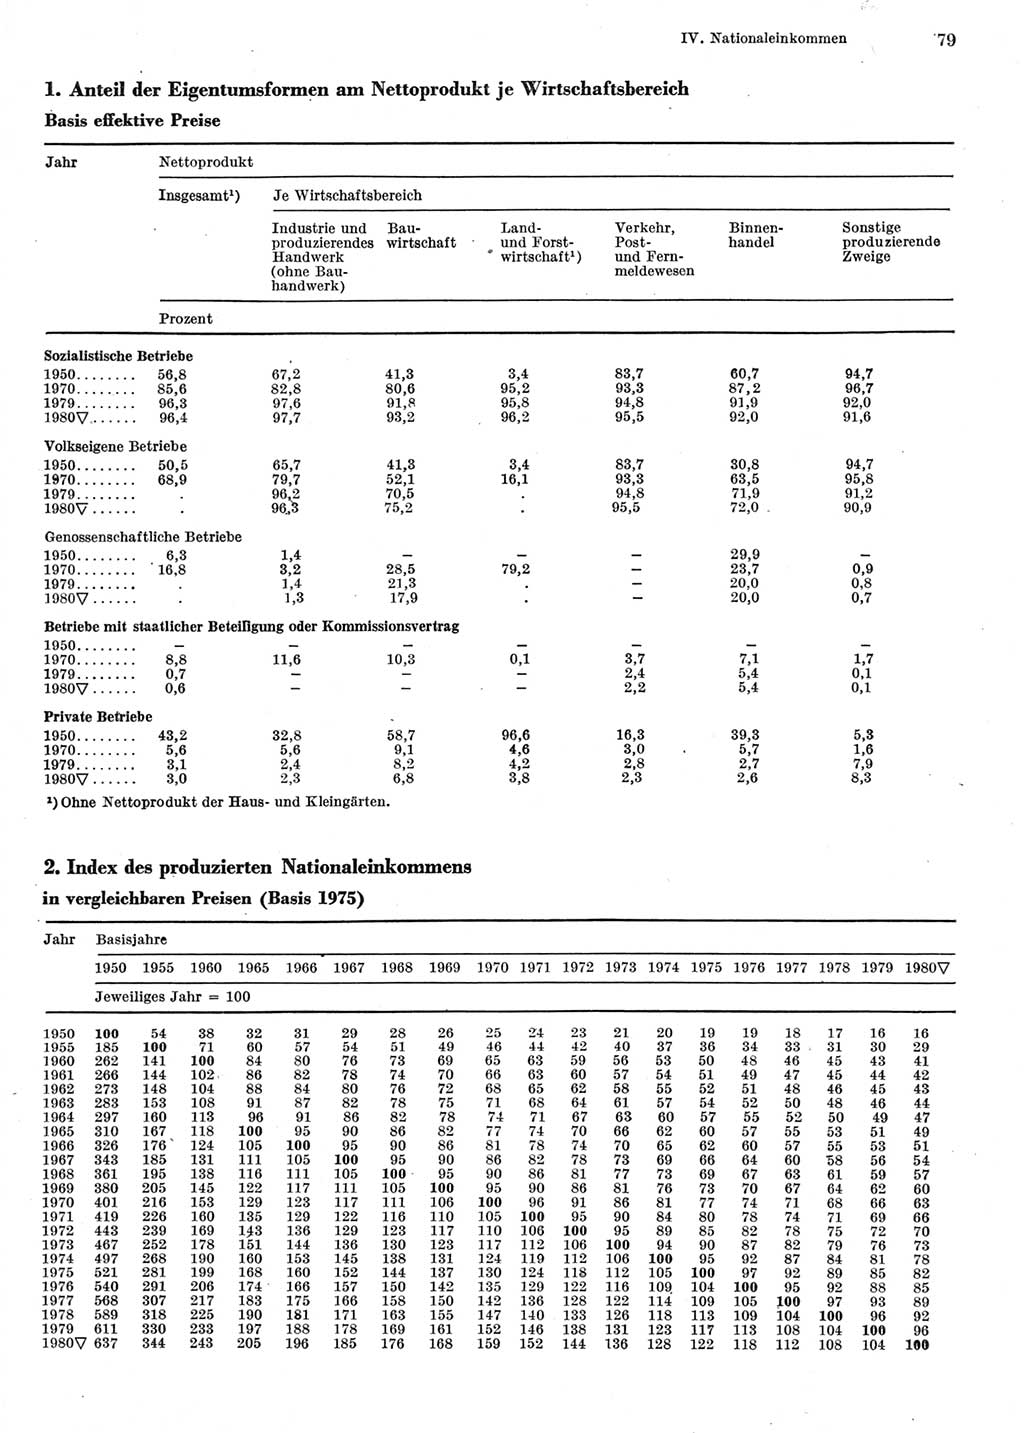 Statistisches Jahrbuch der Deutschen Demokratischen Republik (DDR) 1981, Seite 79 (Stat. Jb. DDR 1981, S. 79)